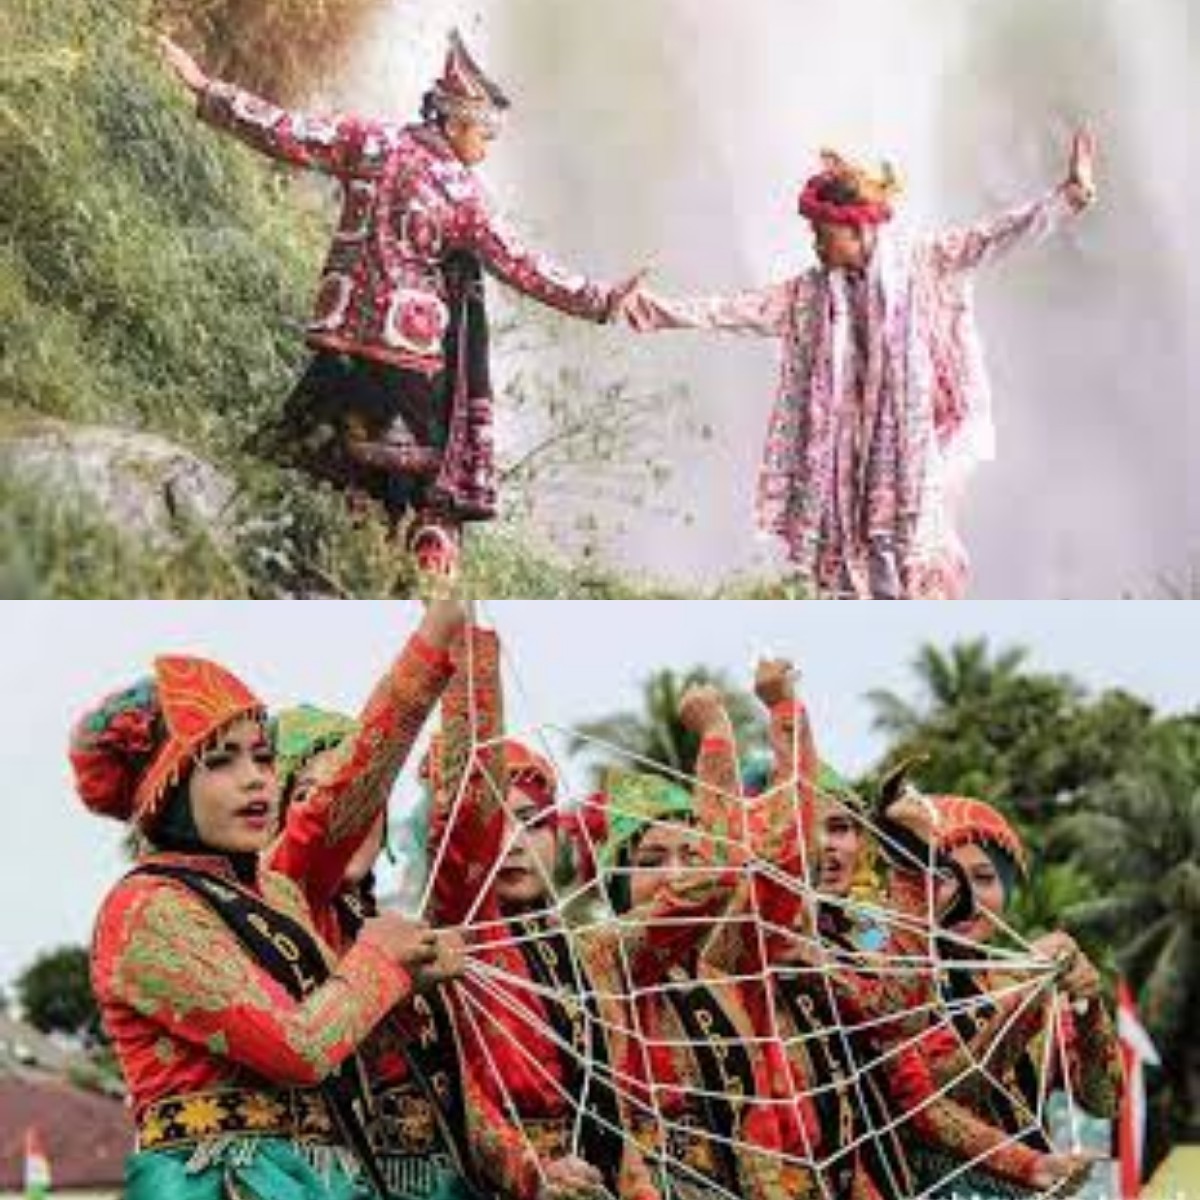 Mengulik Ragam Budaya dan Kesenian Suku Aceh 